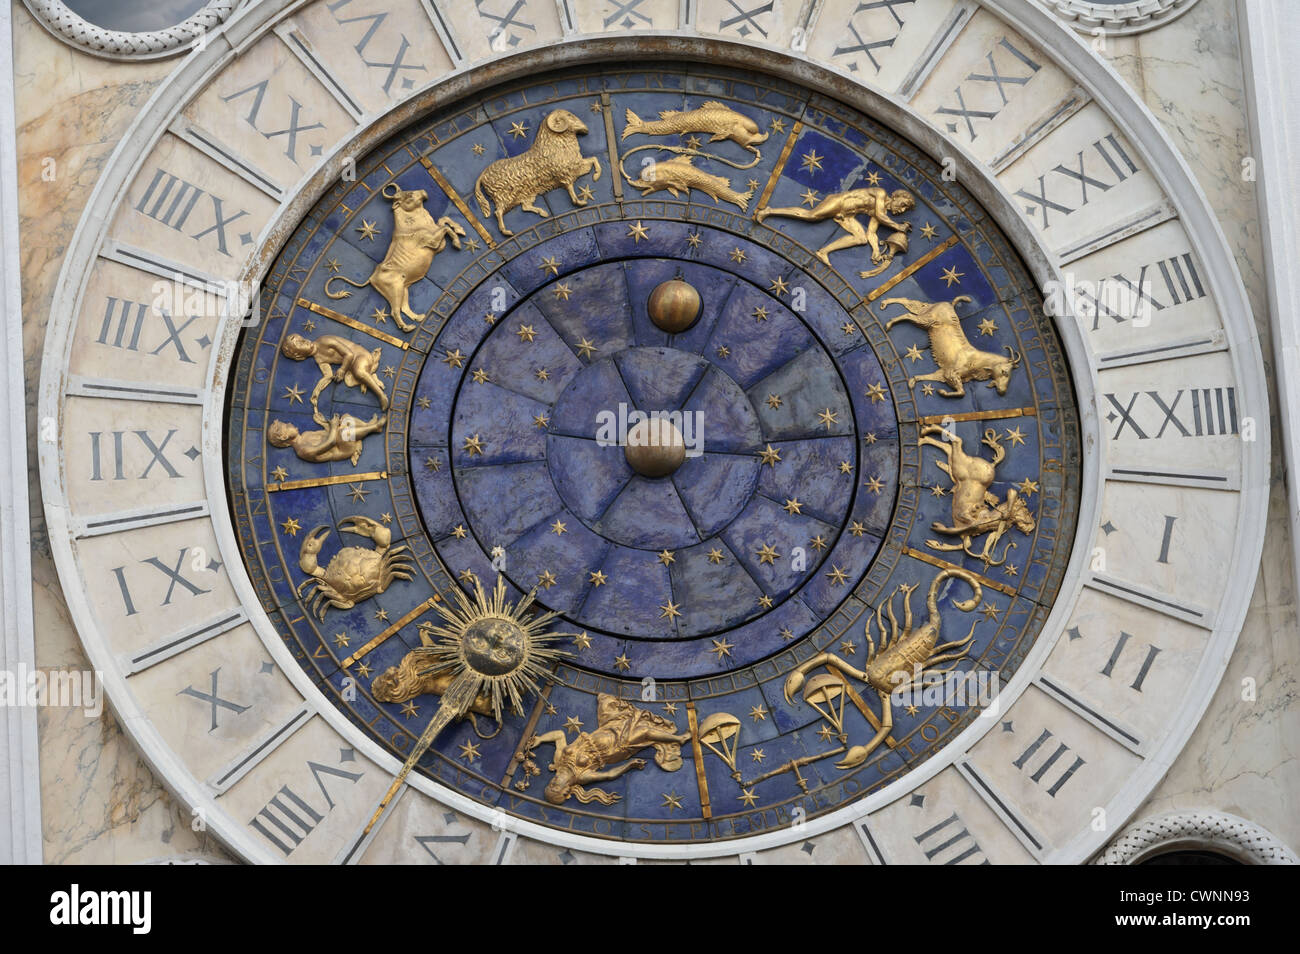 De près de l'horloge de la tour de l'horloge, Venise, Italie. Banque D'Images